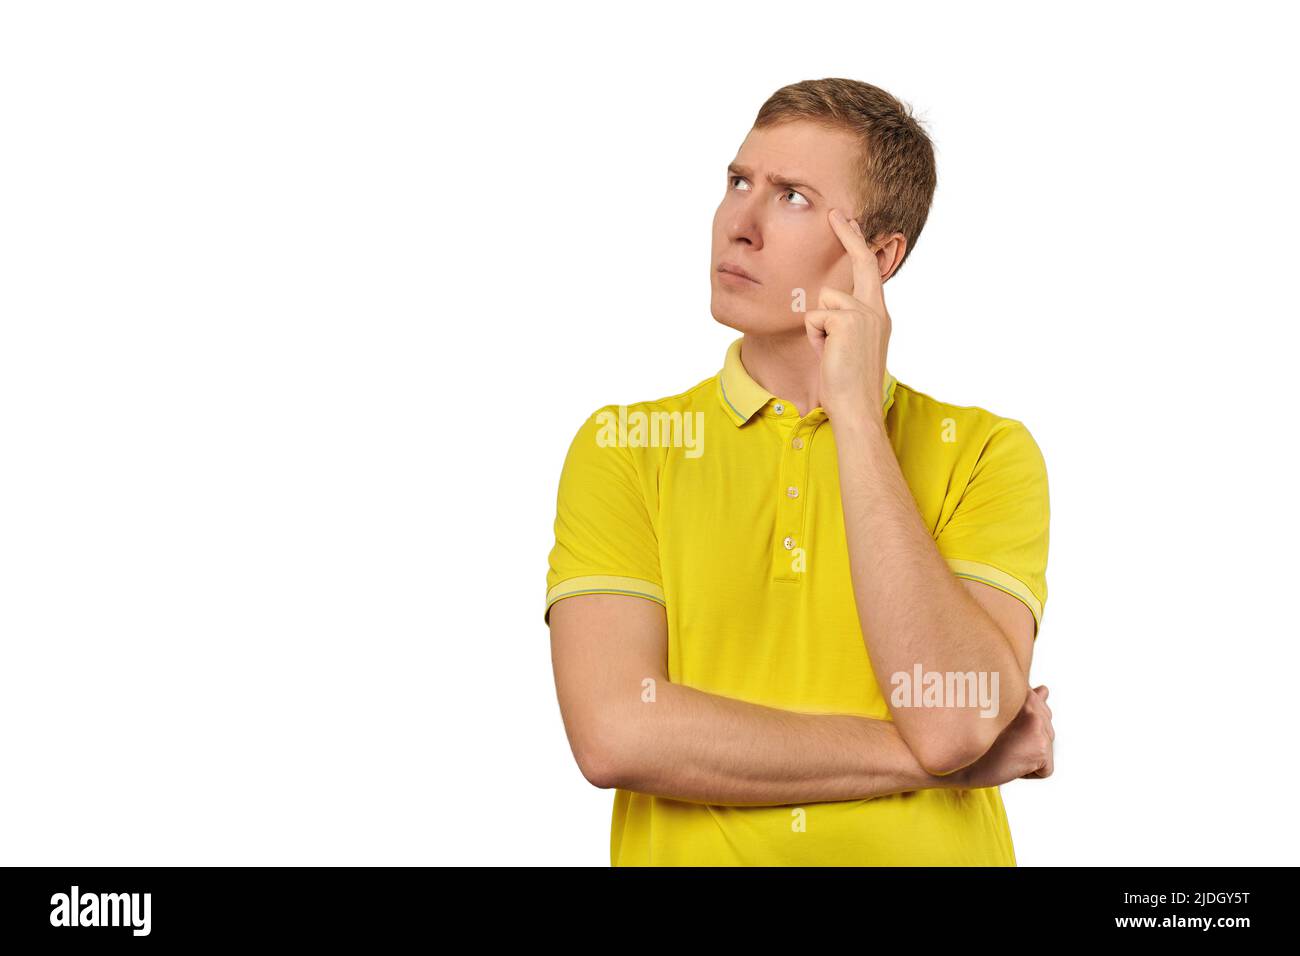 Nachdenklicher Kerl in gelbem T-Shirt, der isoliert auf weißem Hintergrund nach links schaut. Nachdenkender junger Mann, der die Hand an den Kopf legt und darauf schaut Stockfoto